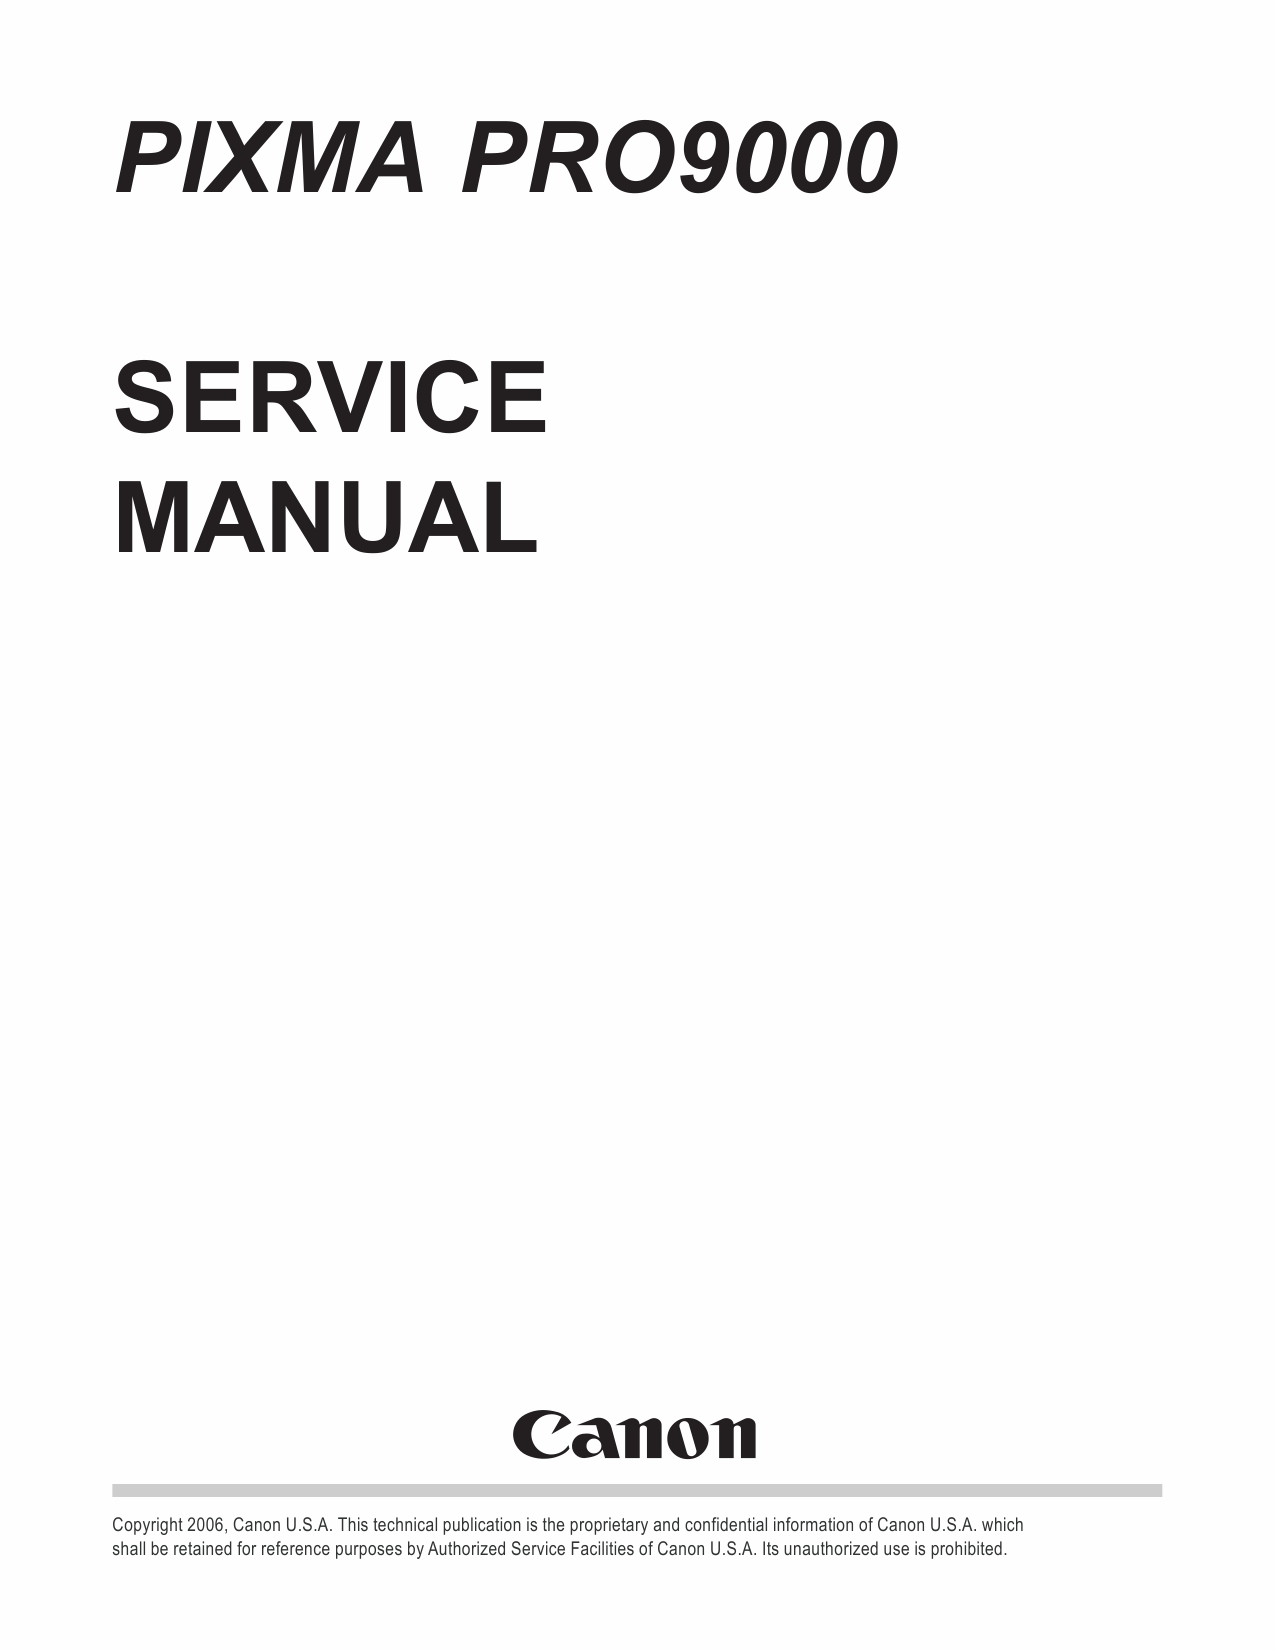 Canon PIXMA PRO9000 Service Manual-1